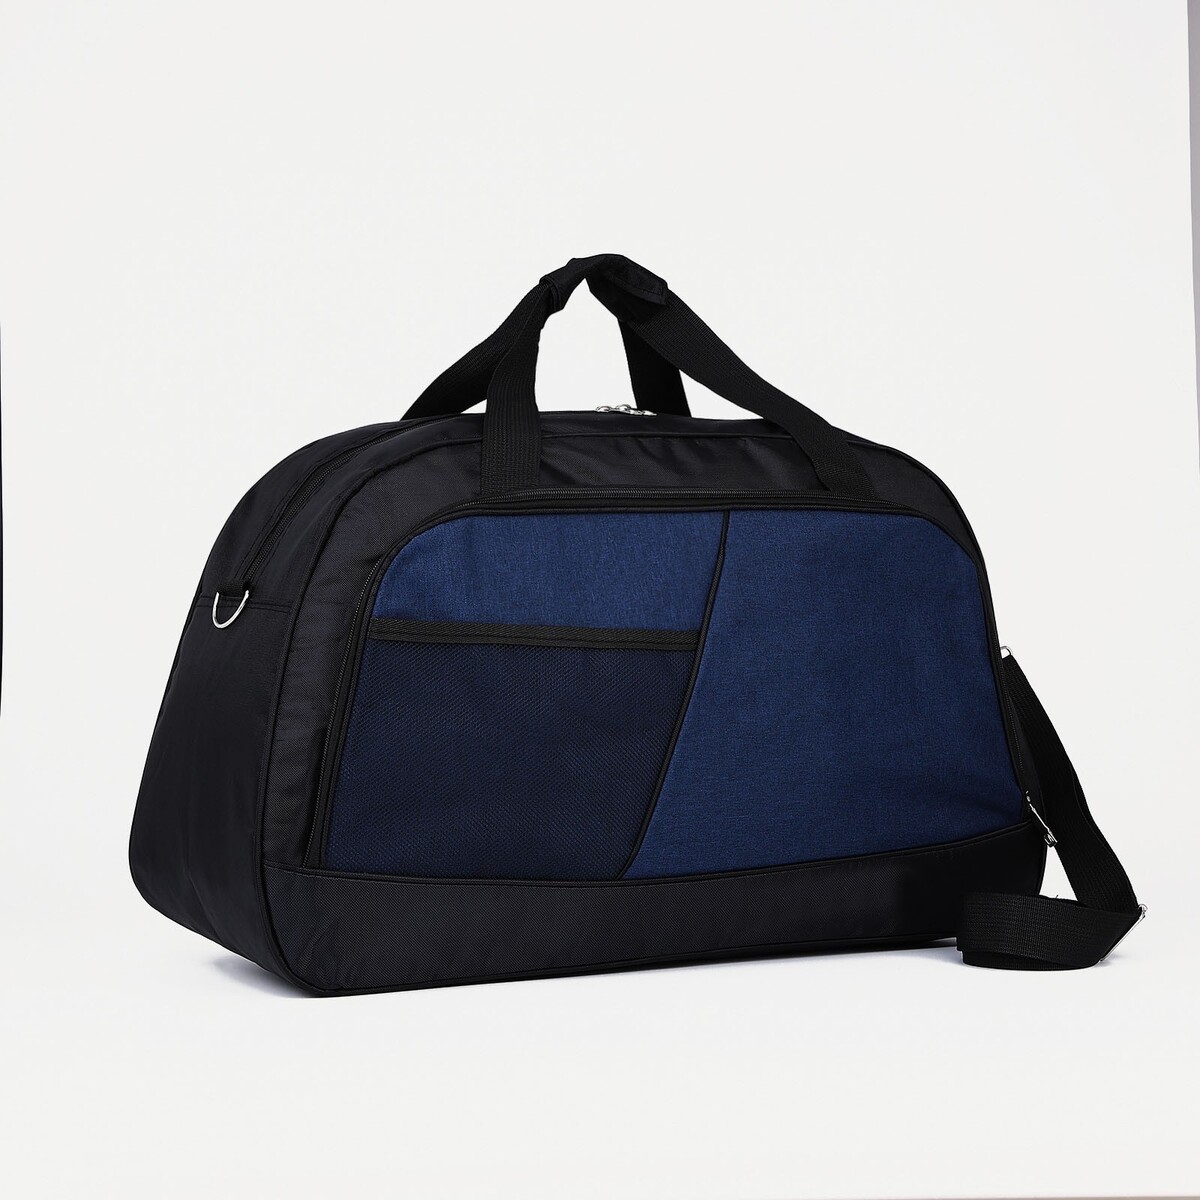 Сумка дорожная на молнии, 2 наружных кармана, длинный ремень, цвет черный/синий сумка спортивная на молнии 2 наружных кармана длинный ремень